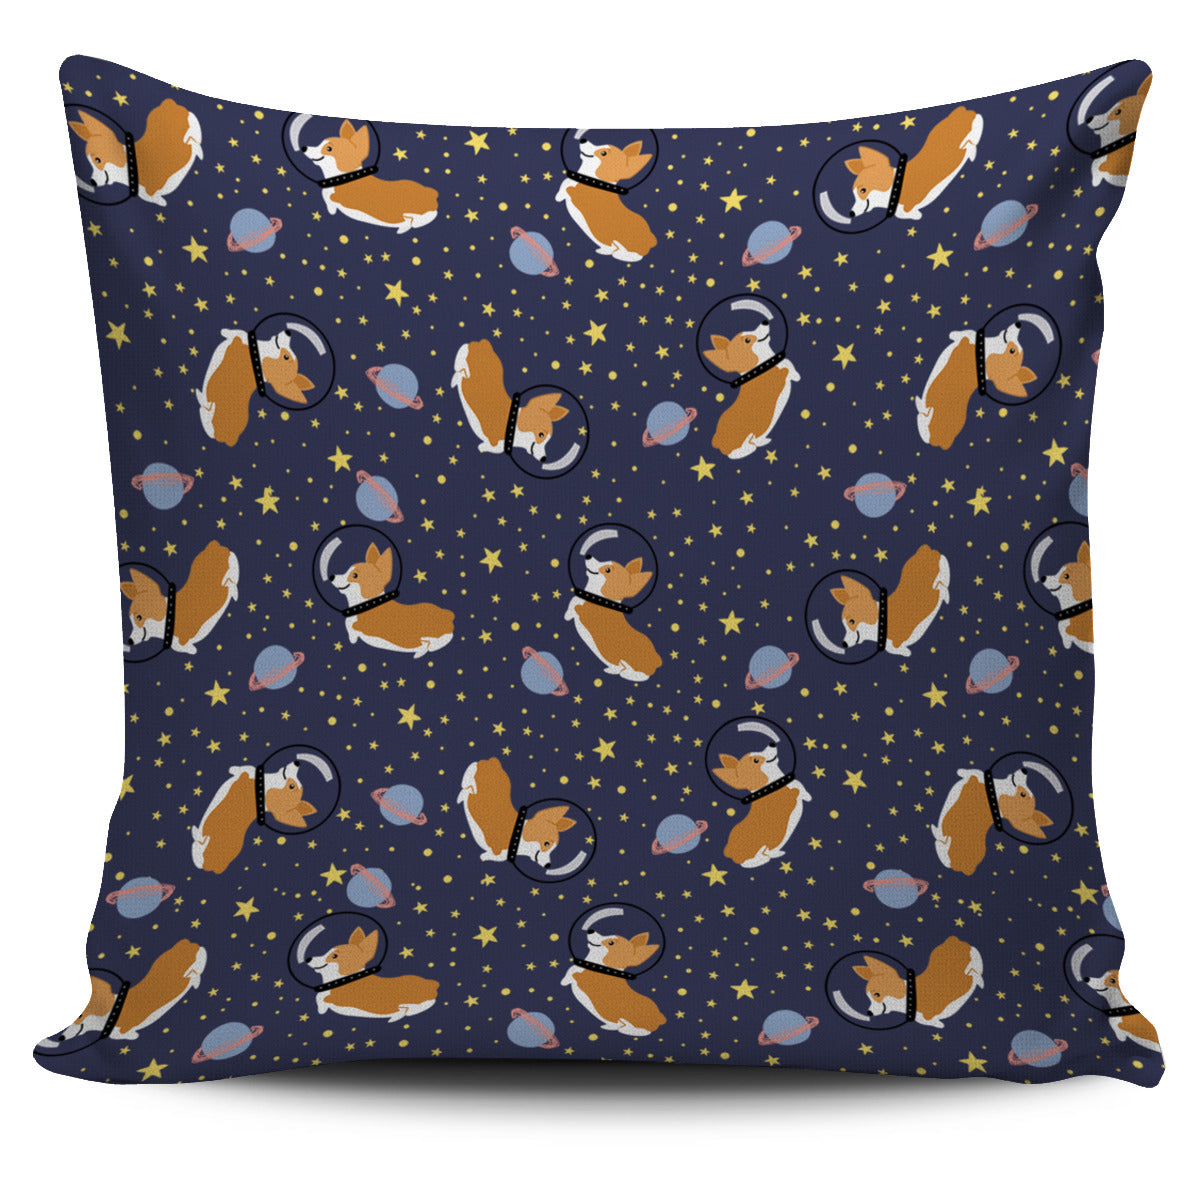 Space Corgi Pillow Cover